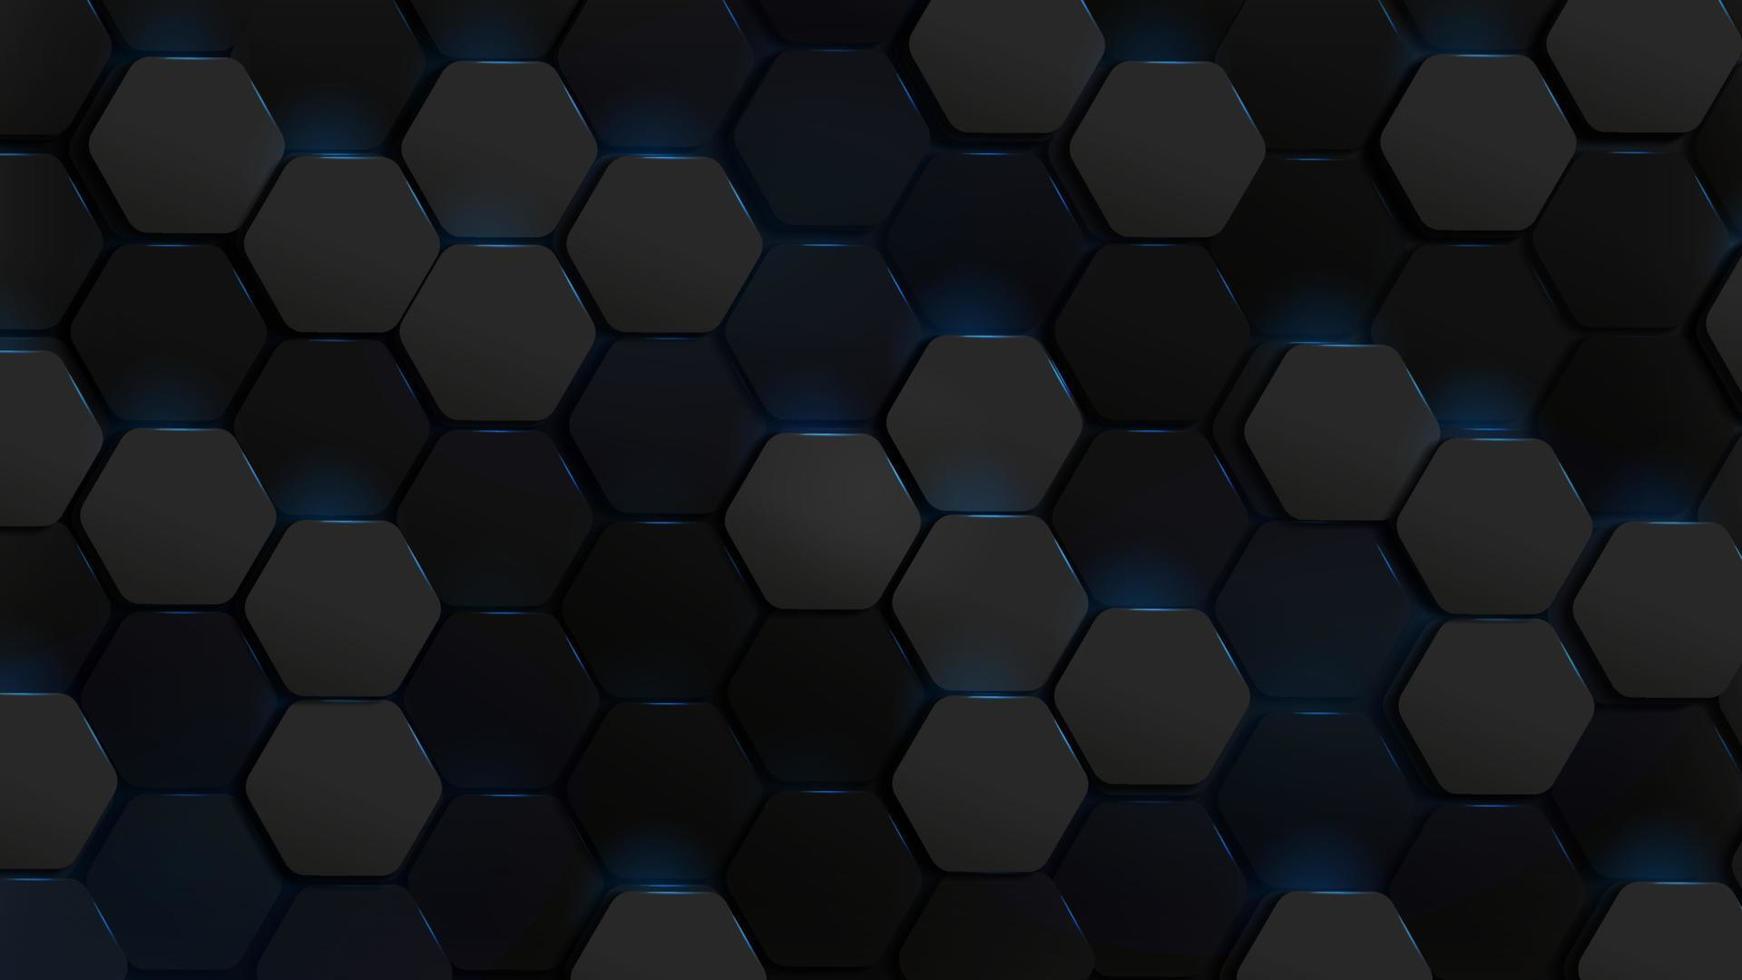 Abstract hexagonal modern technology background vector